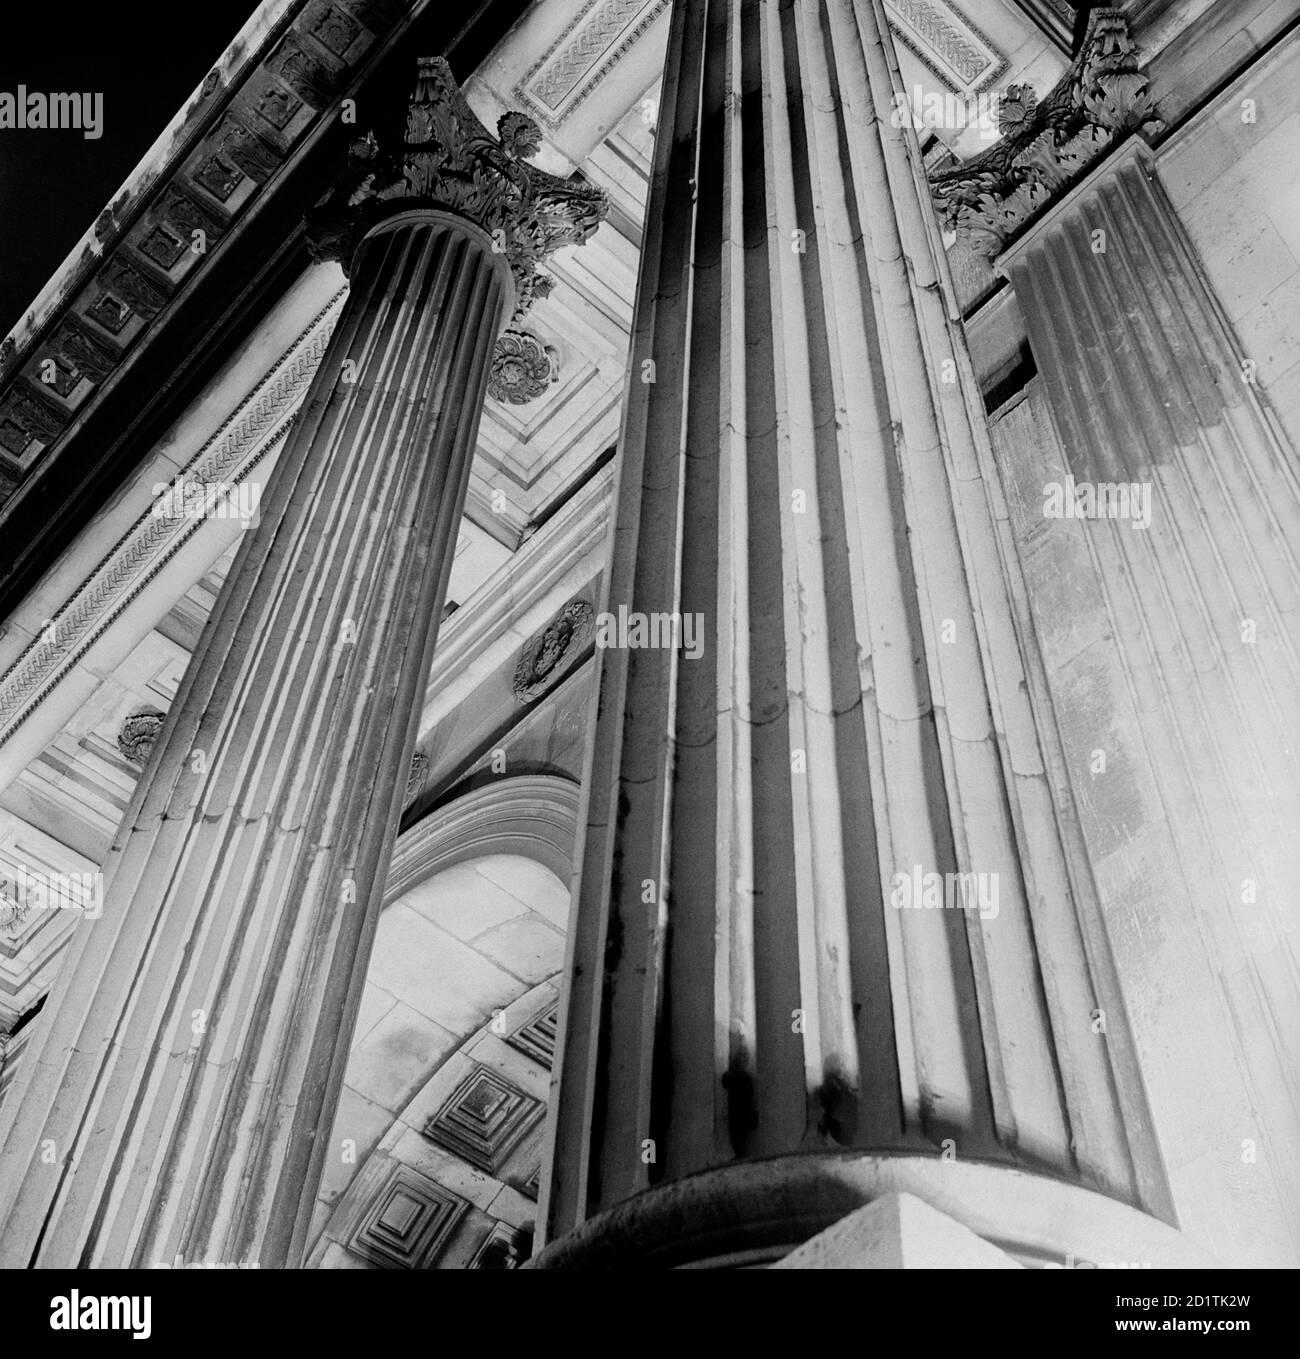 WELLINGTON ARCH, Westminster, Londra. Vista dettagliata del Wellington Arch (conosciuto anche come Constitution Arch o Green Park Arch) che mostra due colonne. Fotografato da Eric de Mare. Intervallo date: 1945-1980. Foto Stock